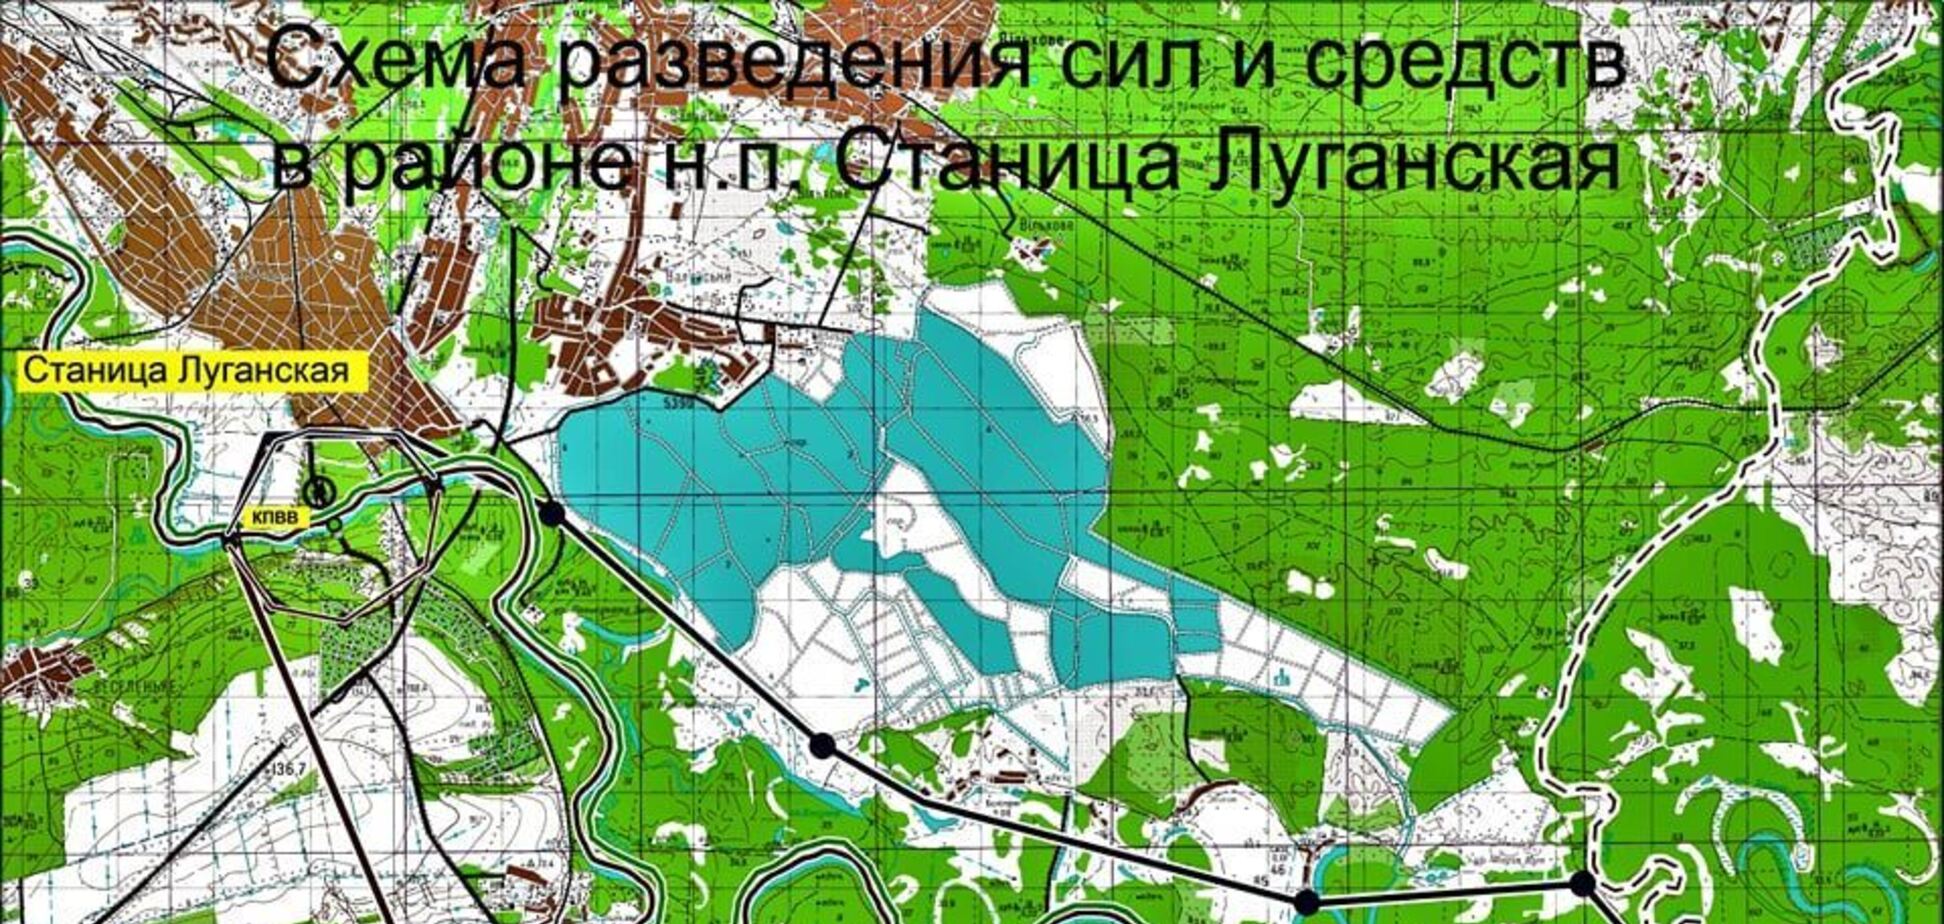 Схема разведения войск и средств в районе н.п. Станица Луганская